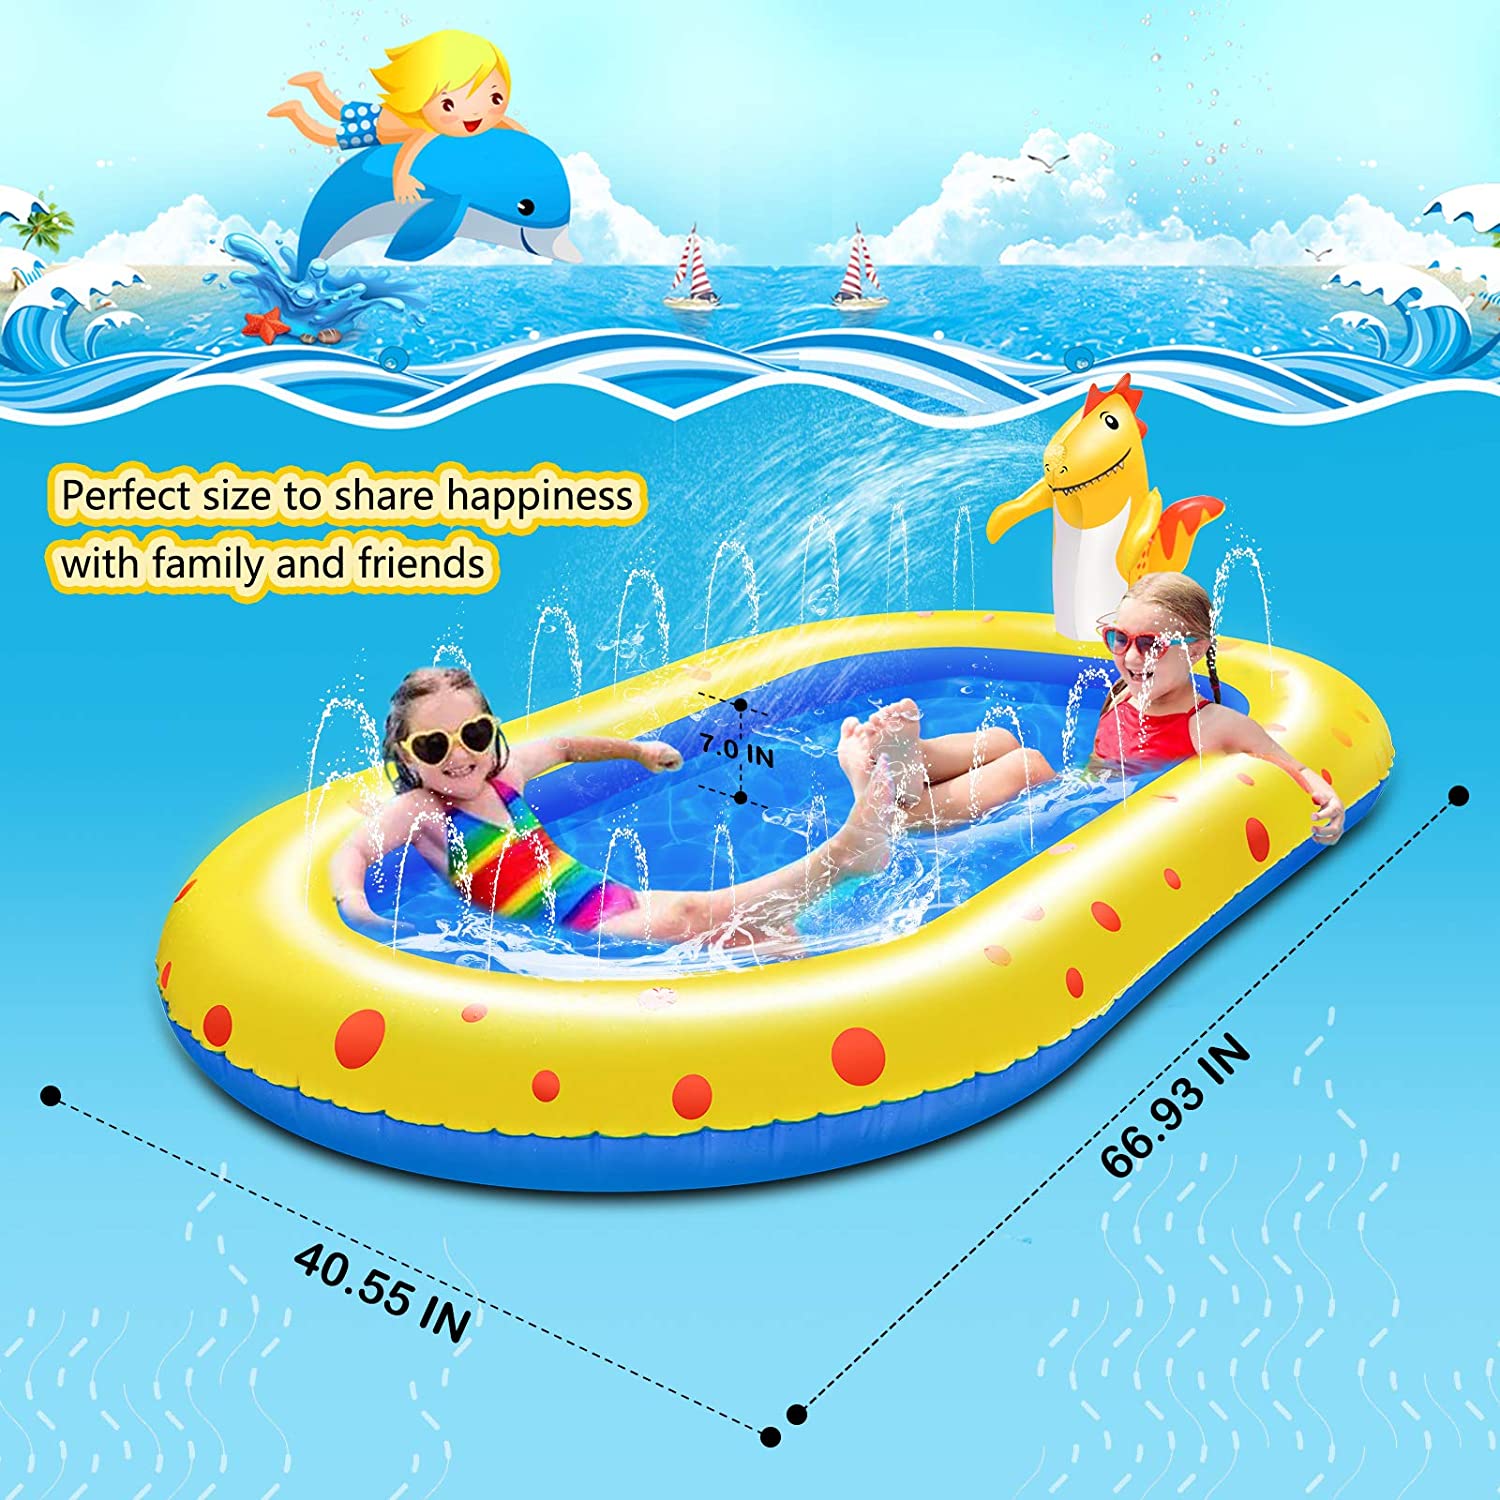 Inflatable Sprinkler Pool for Kids 3 in 1 Baby Pool Outdoor Splash